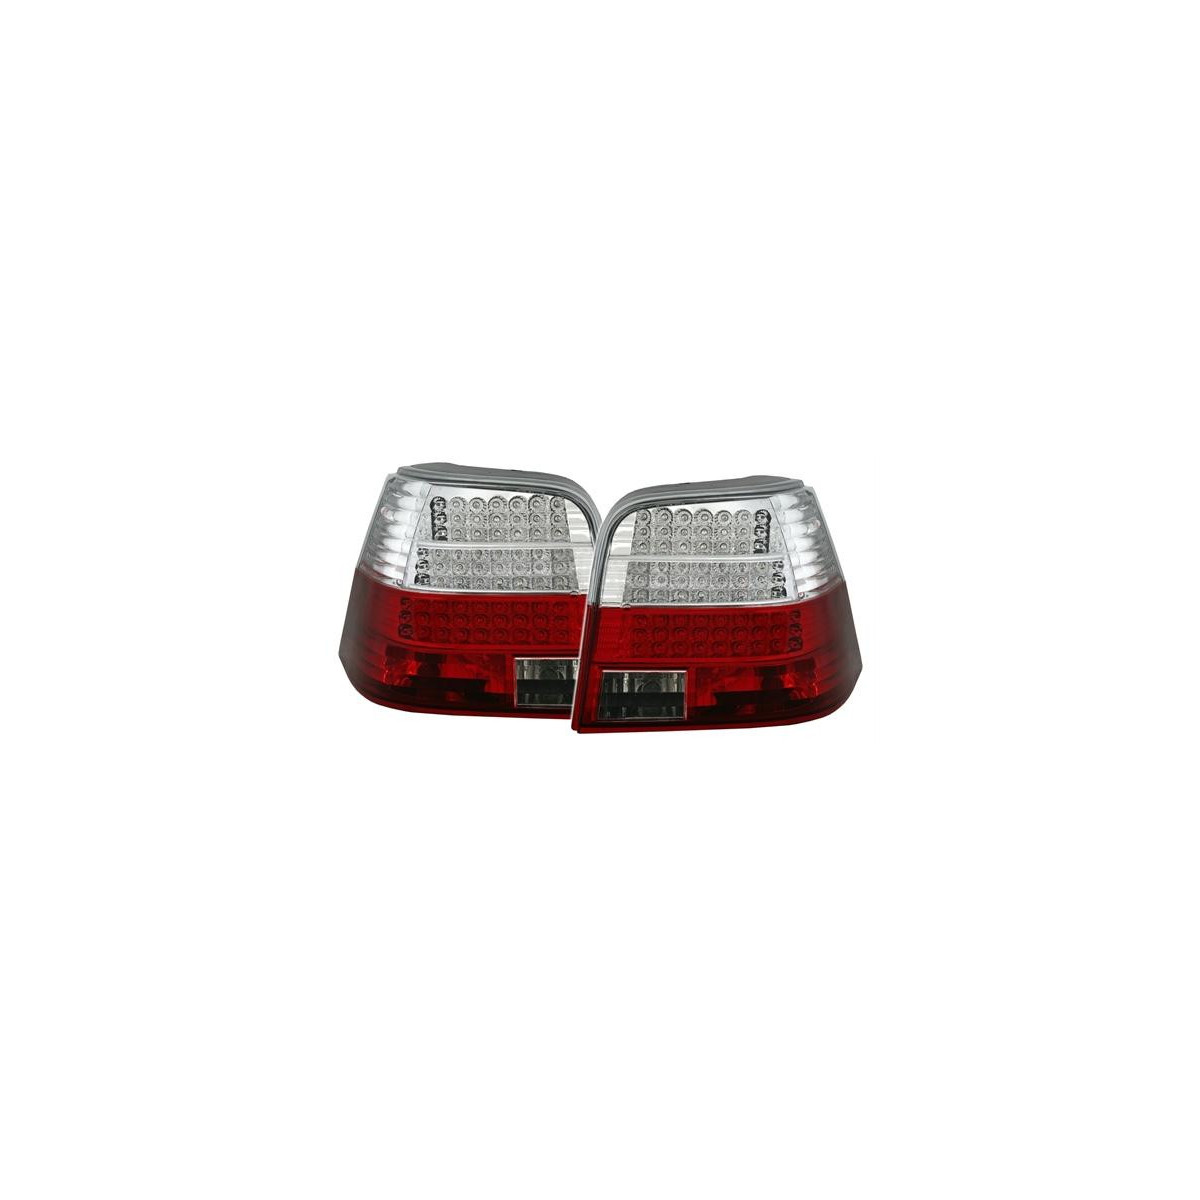 LAMPY TYLNE DIODOWE VW GOLF 4 98-04 RED WHITE